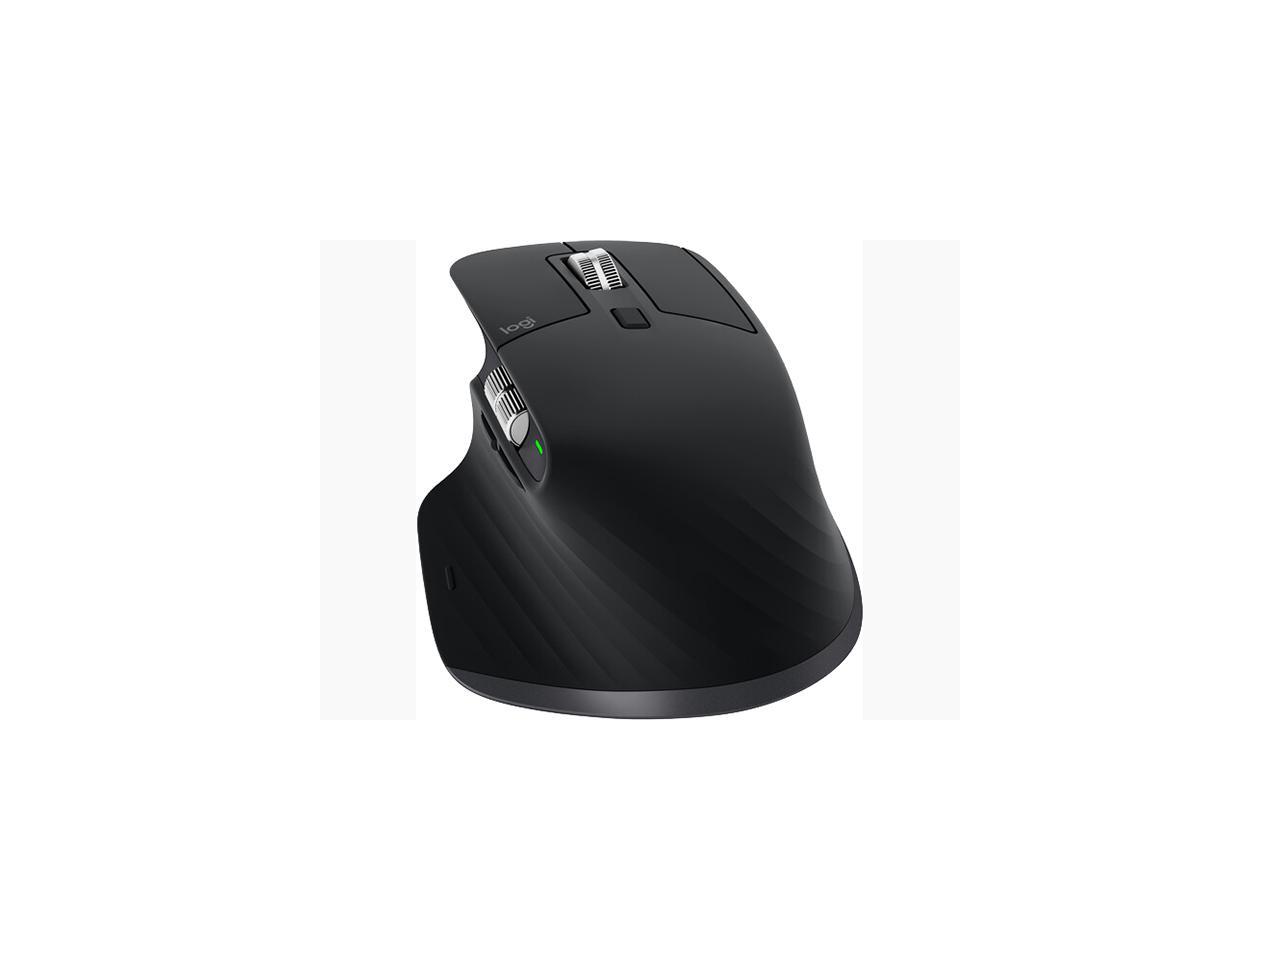 その他 その他 Logitech MX Master 3S - Wireless Performance Mouse with Ultra-fast 